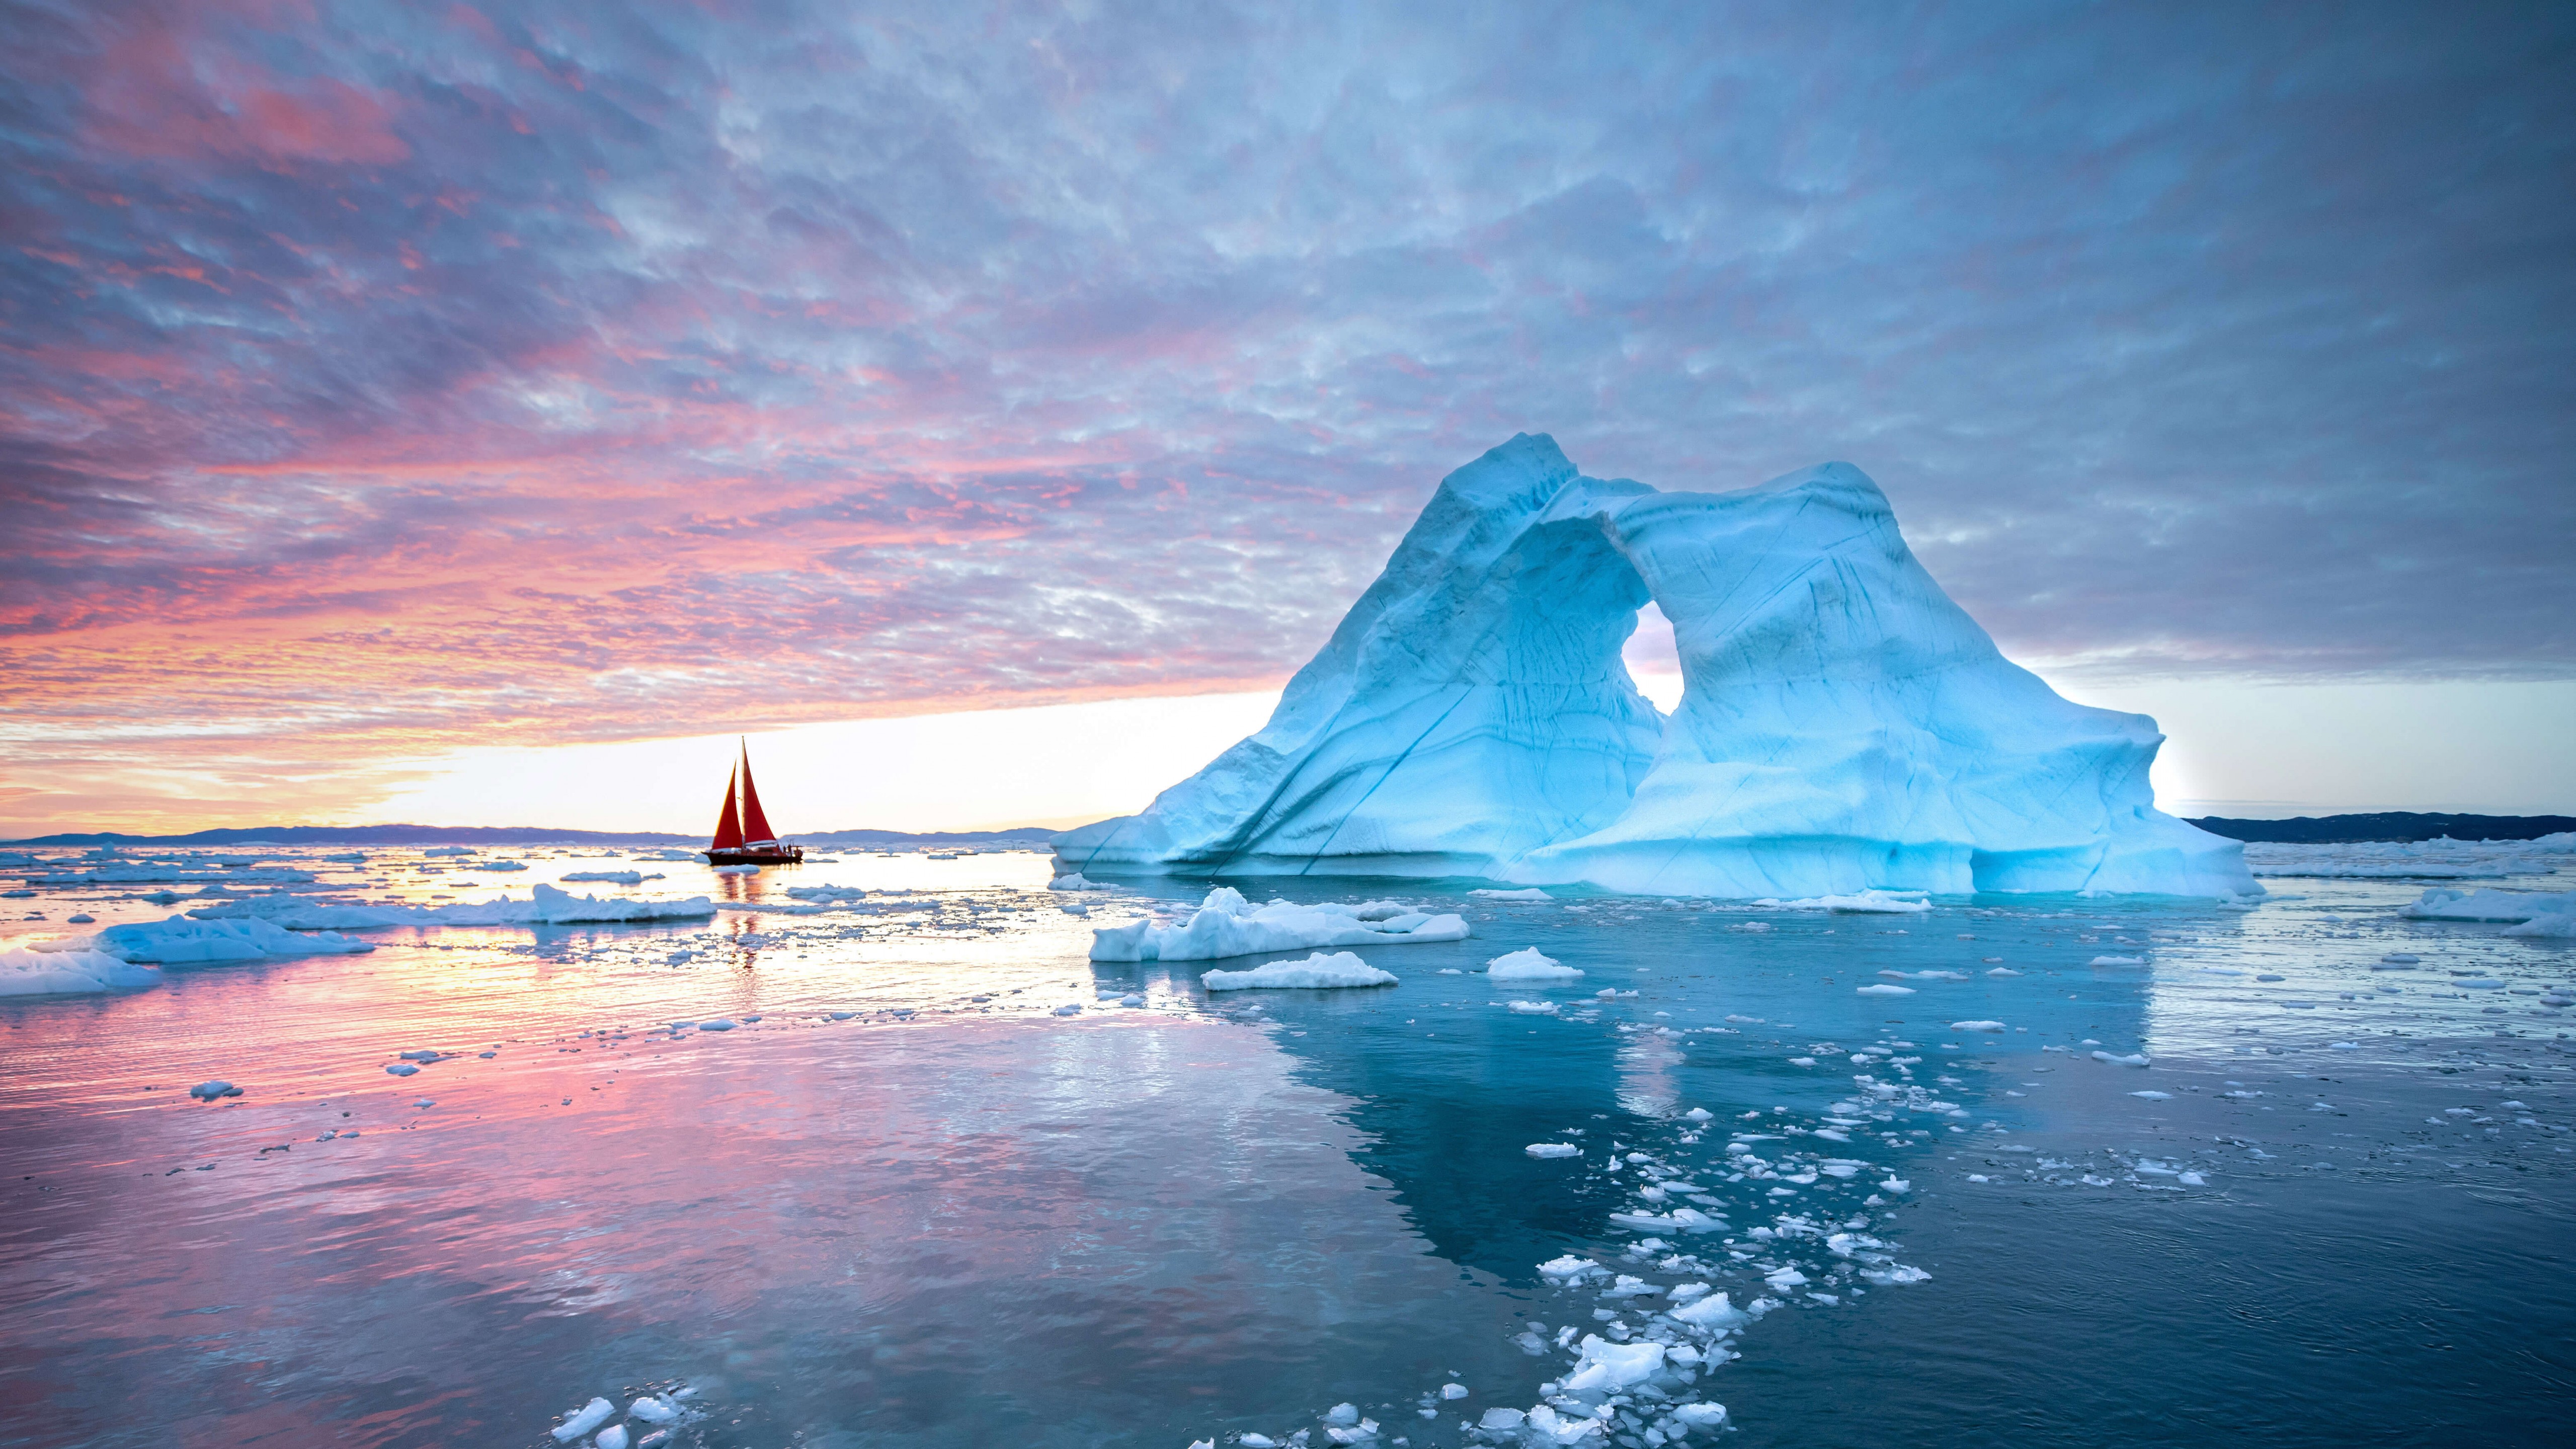 Www bing com image. Залив диско Гренландия. Гренланди айсберги. Гренландия океан. Антарктида фото.